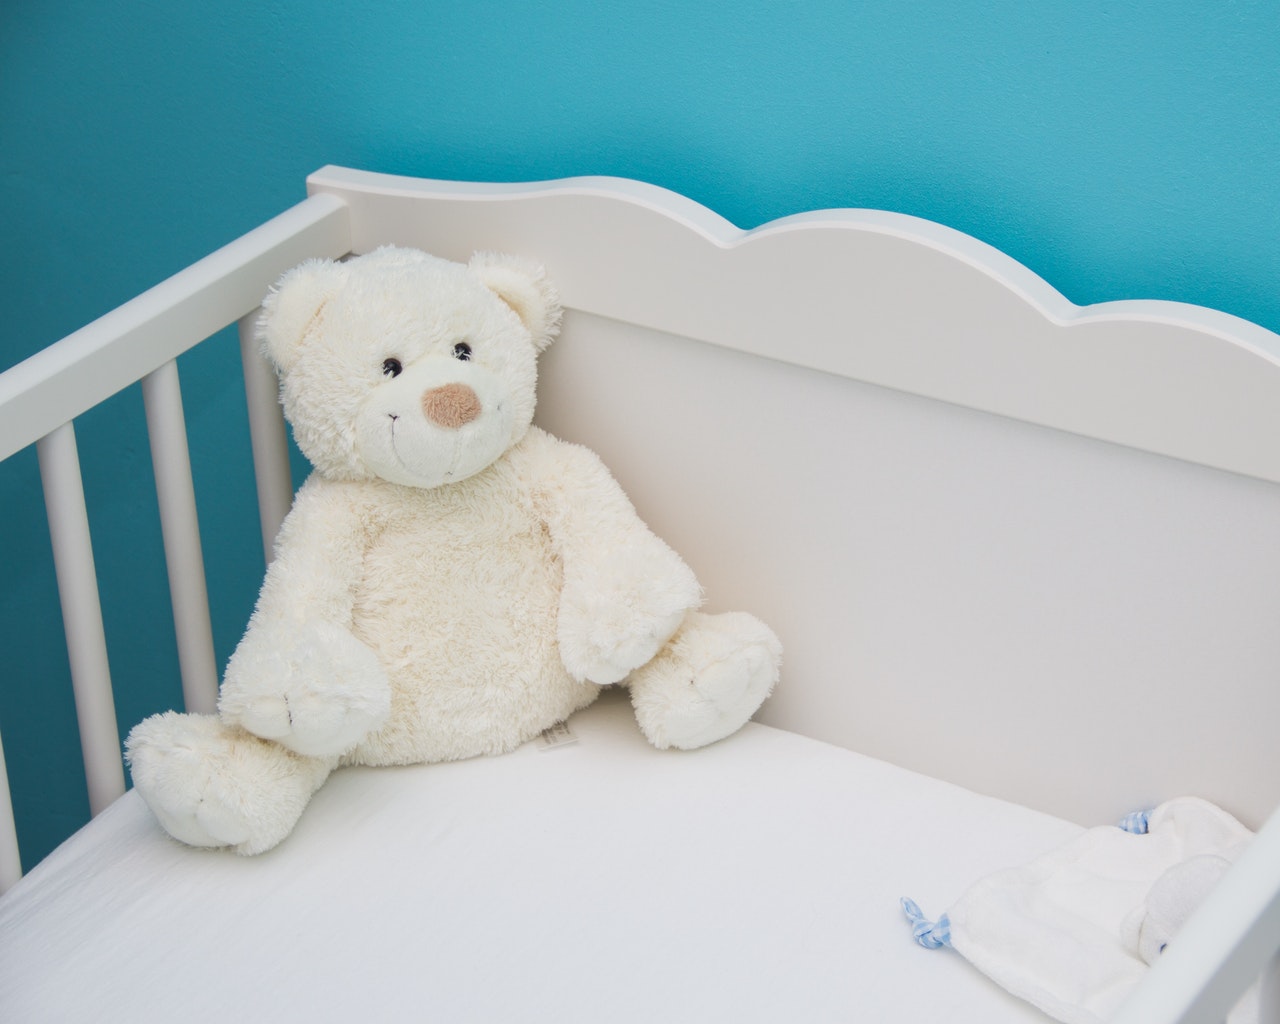 Quelques règles pour éviter la mort subite chez bébé